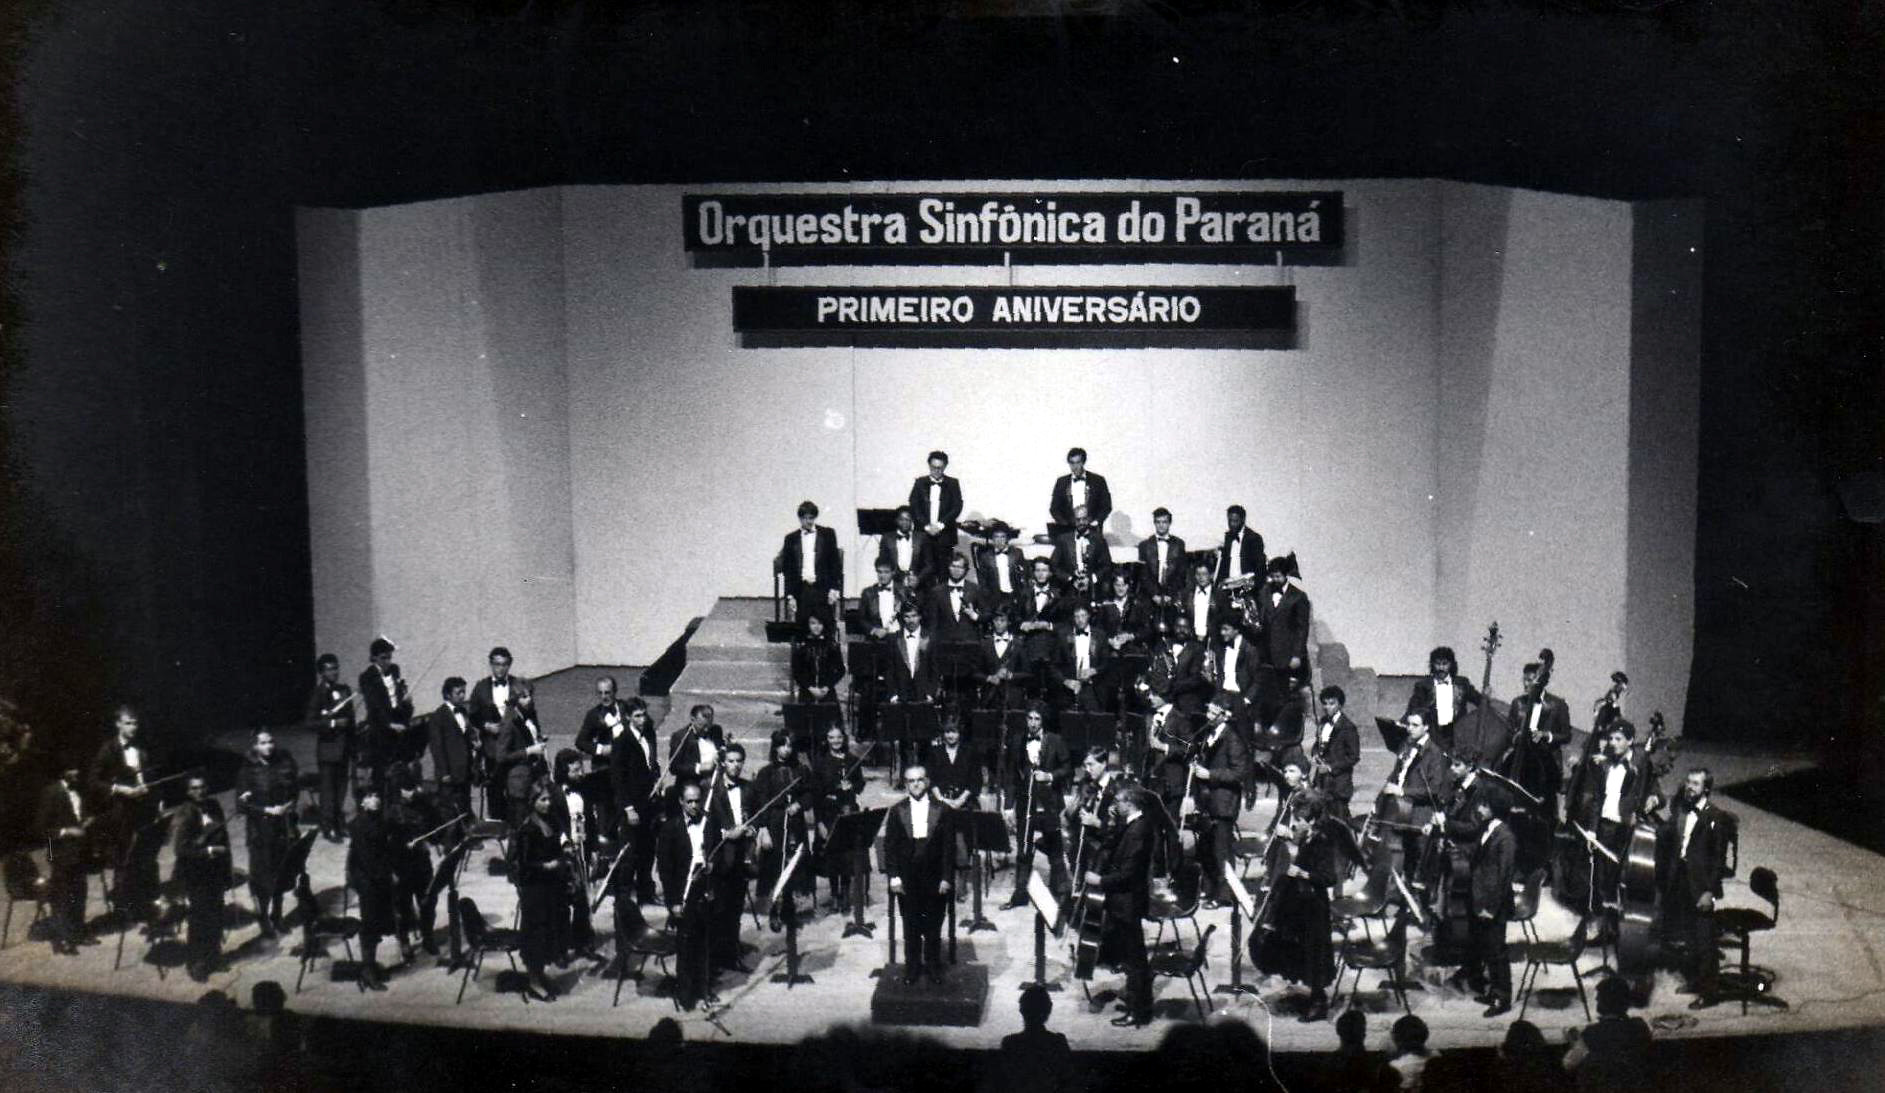 Concerto do primeiro aniversário da Orquestra Sinfônica do Paraná, em maio de 1986